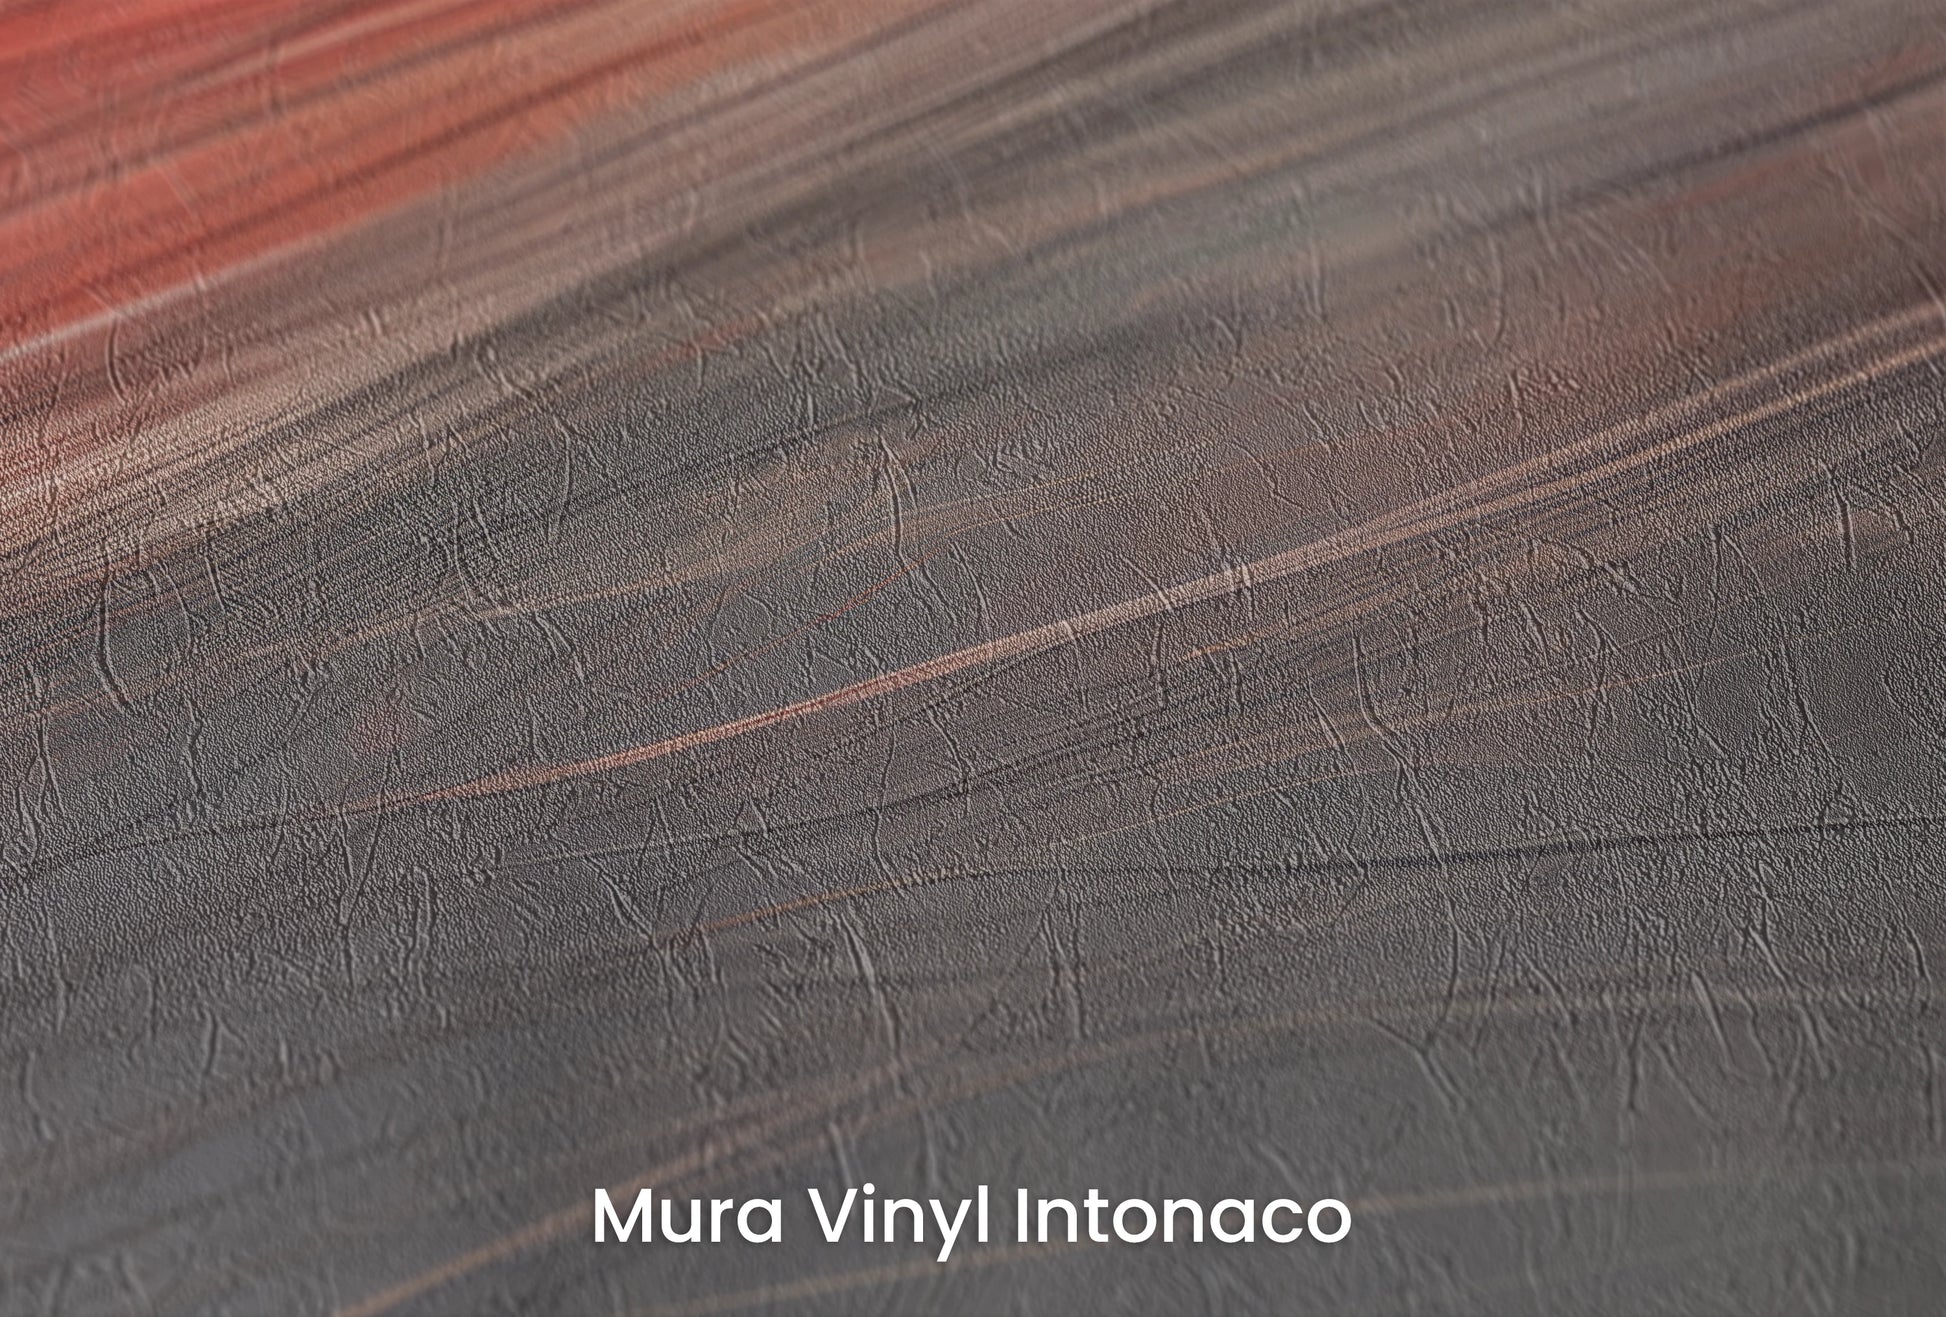 Zbliżenie na artystyczną fototapetę o nazwie Blaze of Glory na podłożu Mura Vinyl Intonaco - struktura tartego tynku.